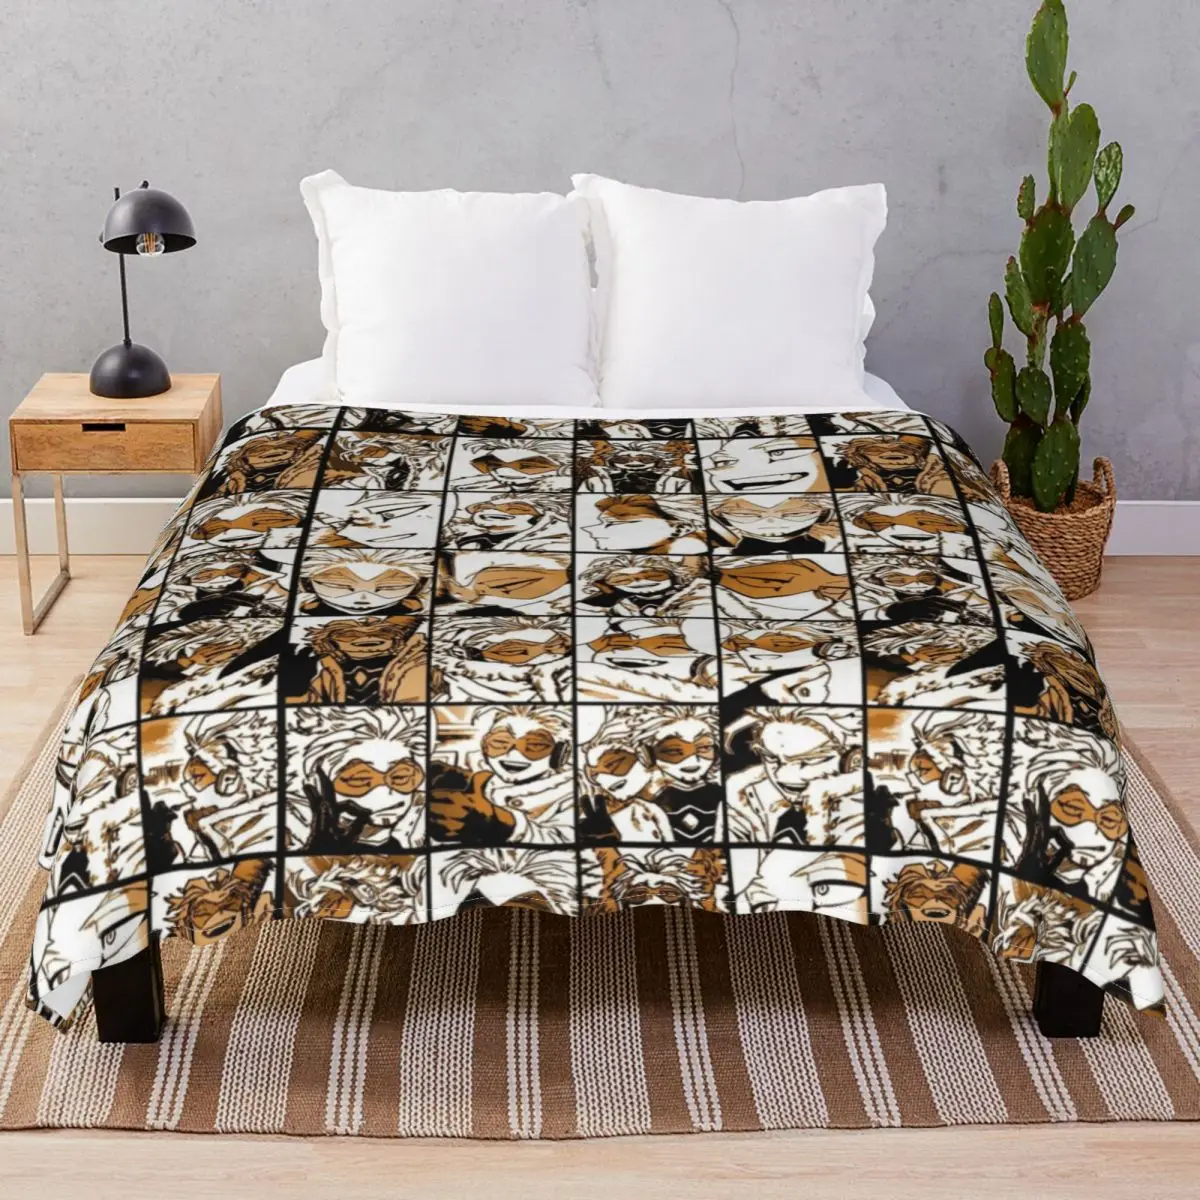 

Цветное фланелевое одеяло Hawks в стиле манга, искусственное многофункциональное покрывало для постельного белья, дивана, путешествия, офиса